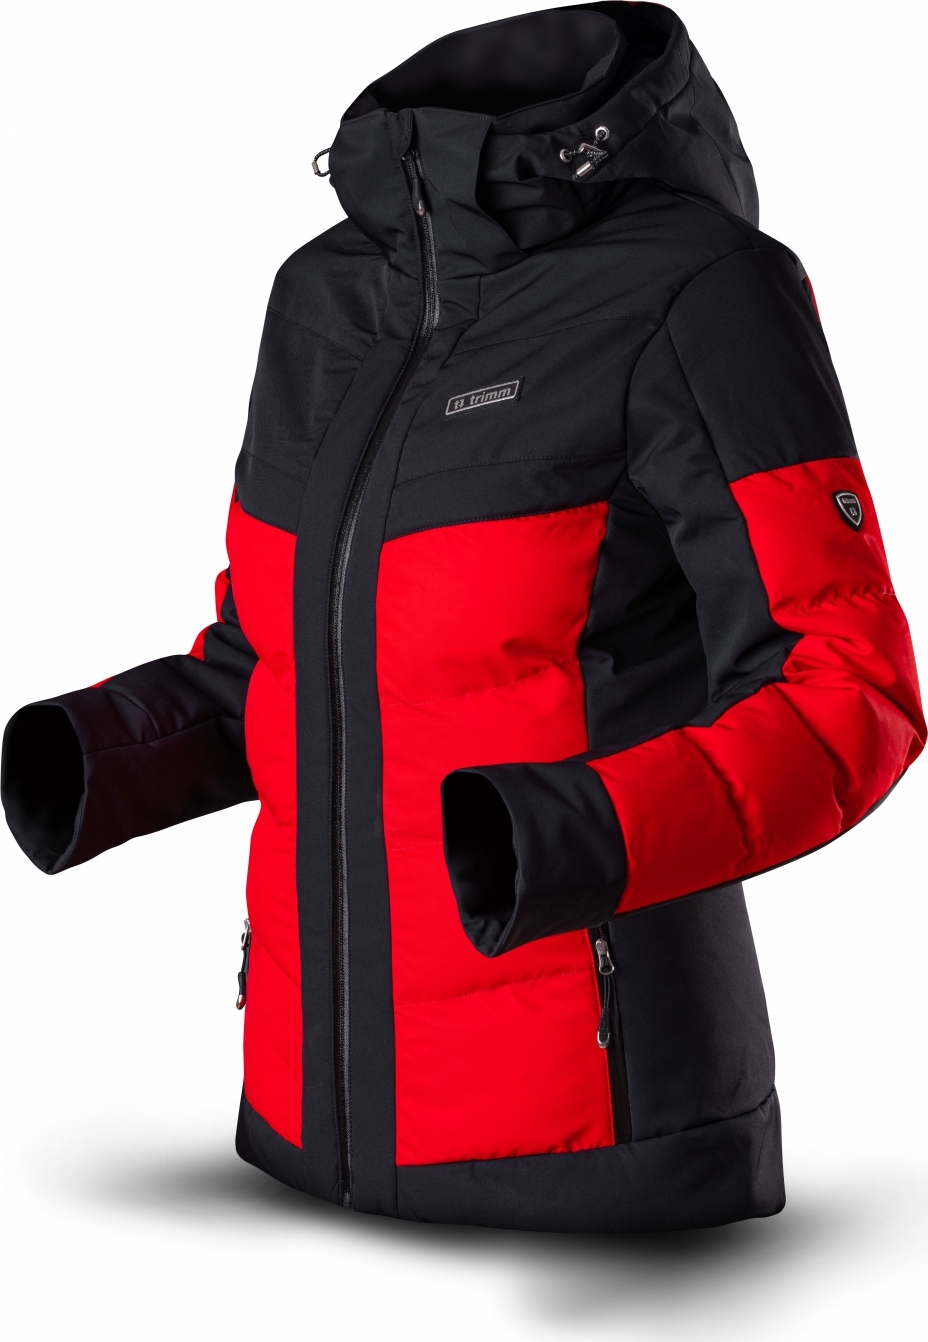 Dámská lyžařská bunda TRIMM Vario Lady červená/černá Velikost: M, Barva: red/ black